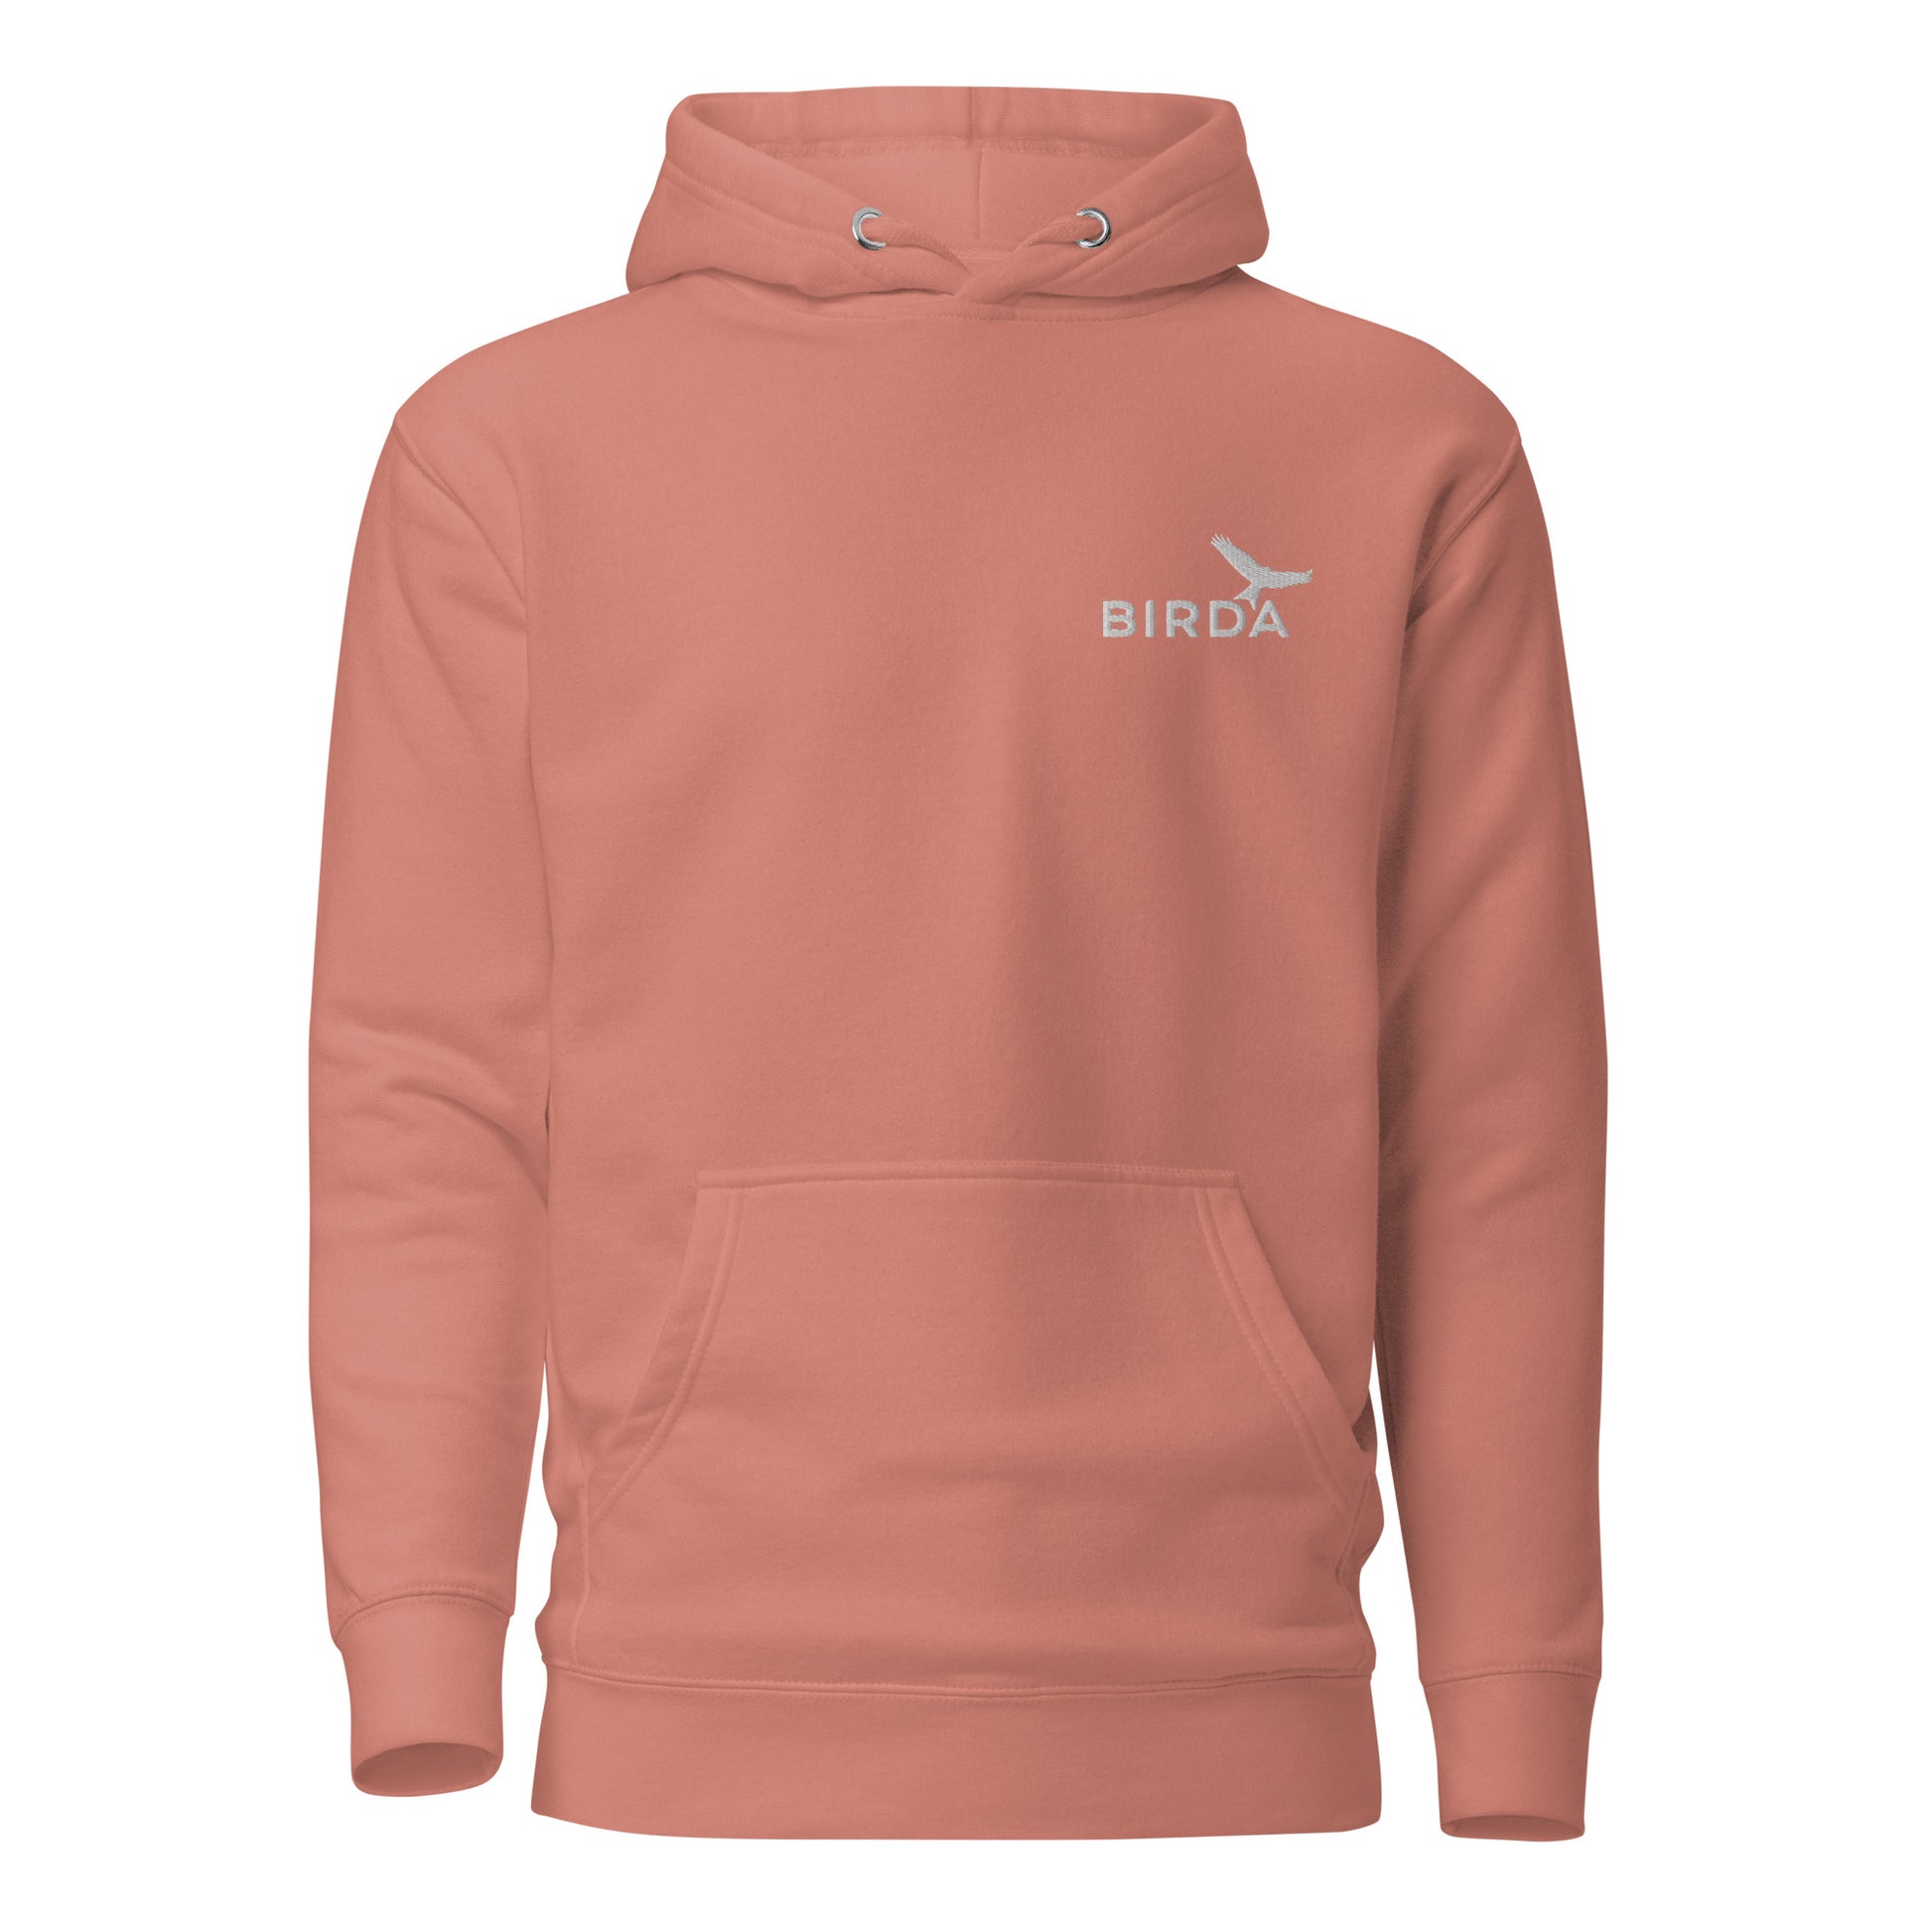 Birda bird premium hoodie - rose colour